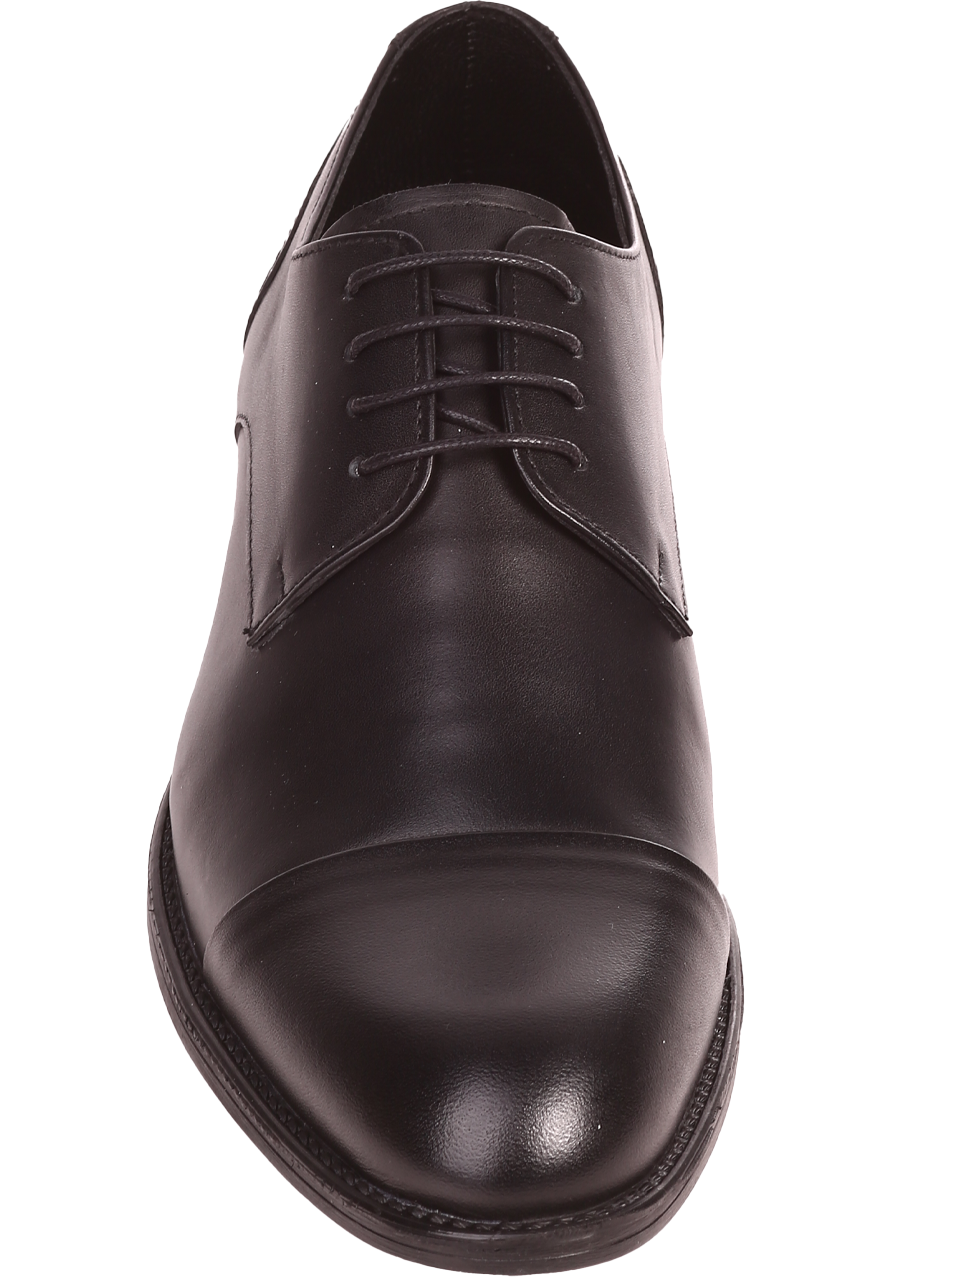 Елегантни мъжки обувки от естествена кожа в черно 7AT-24368 black